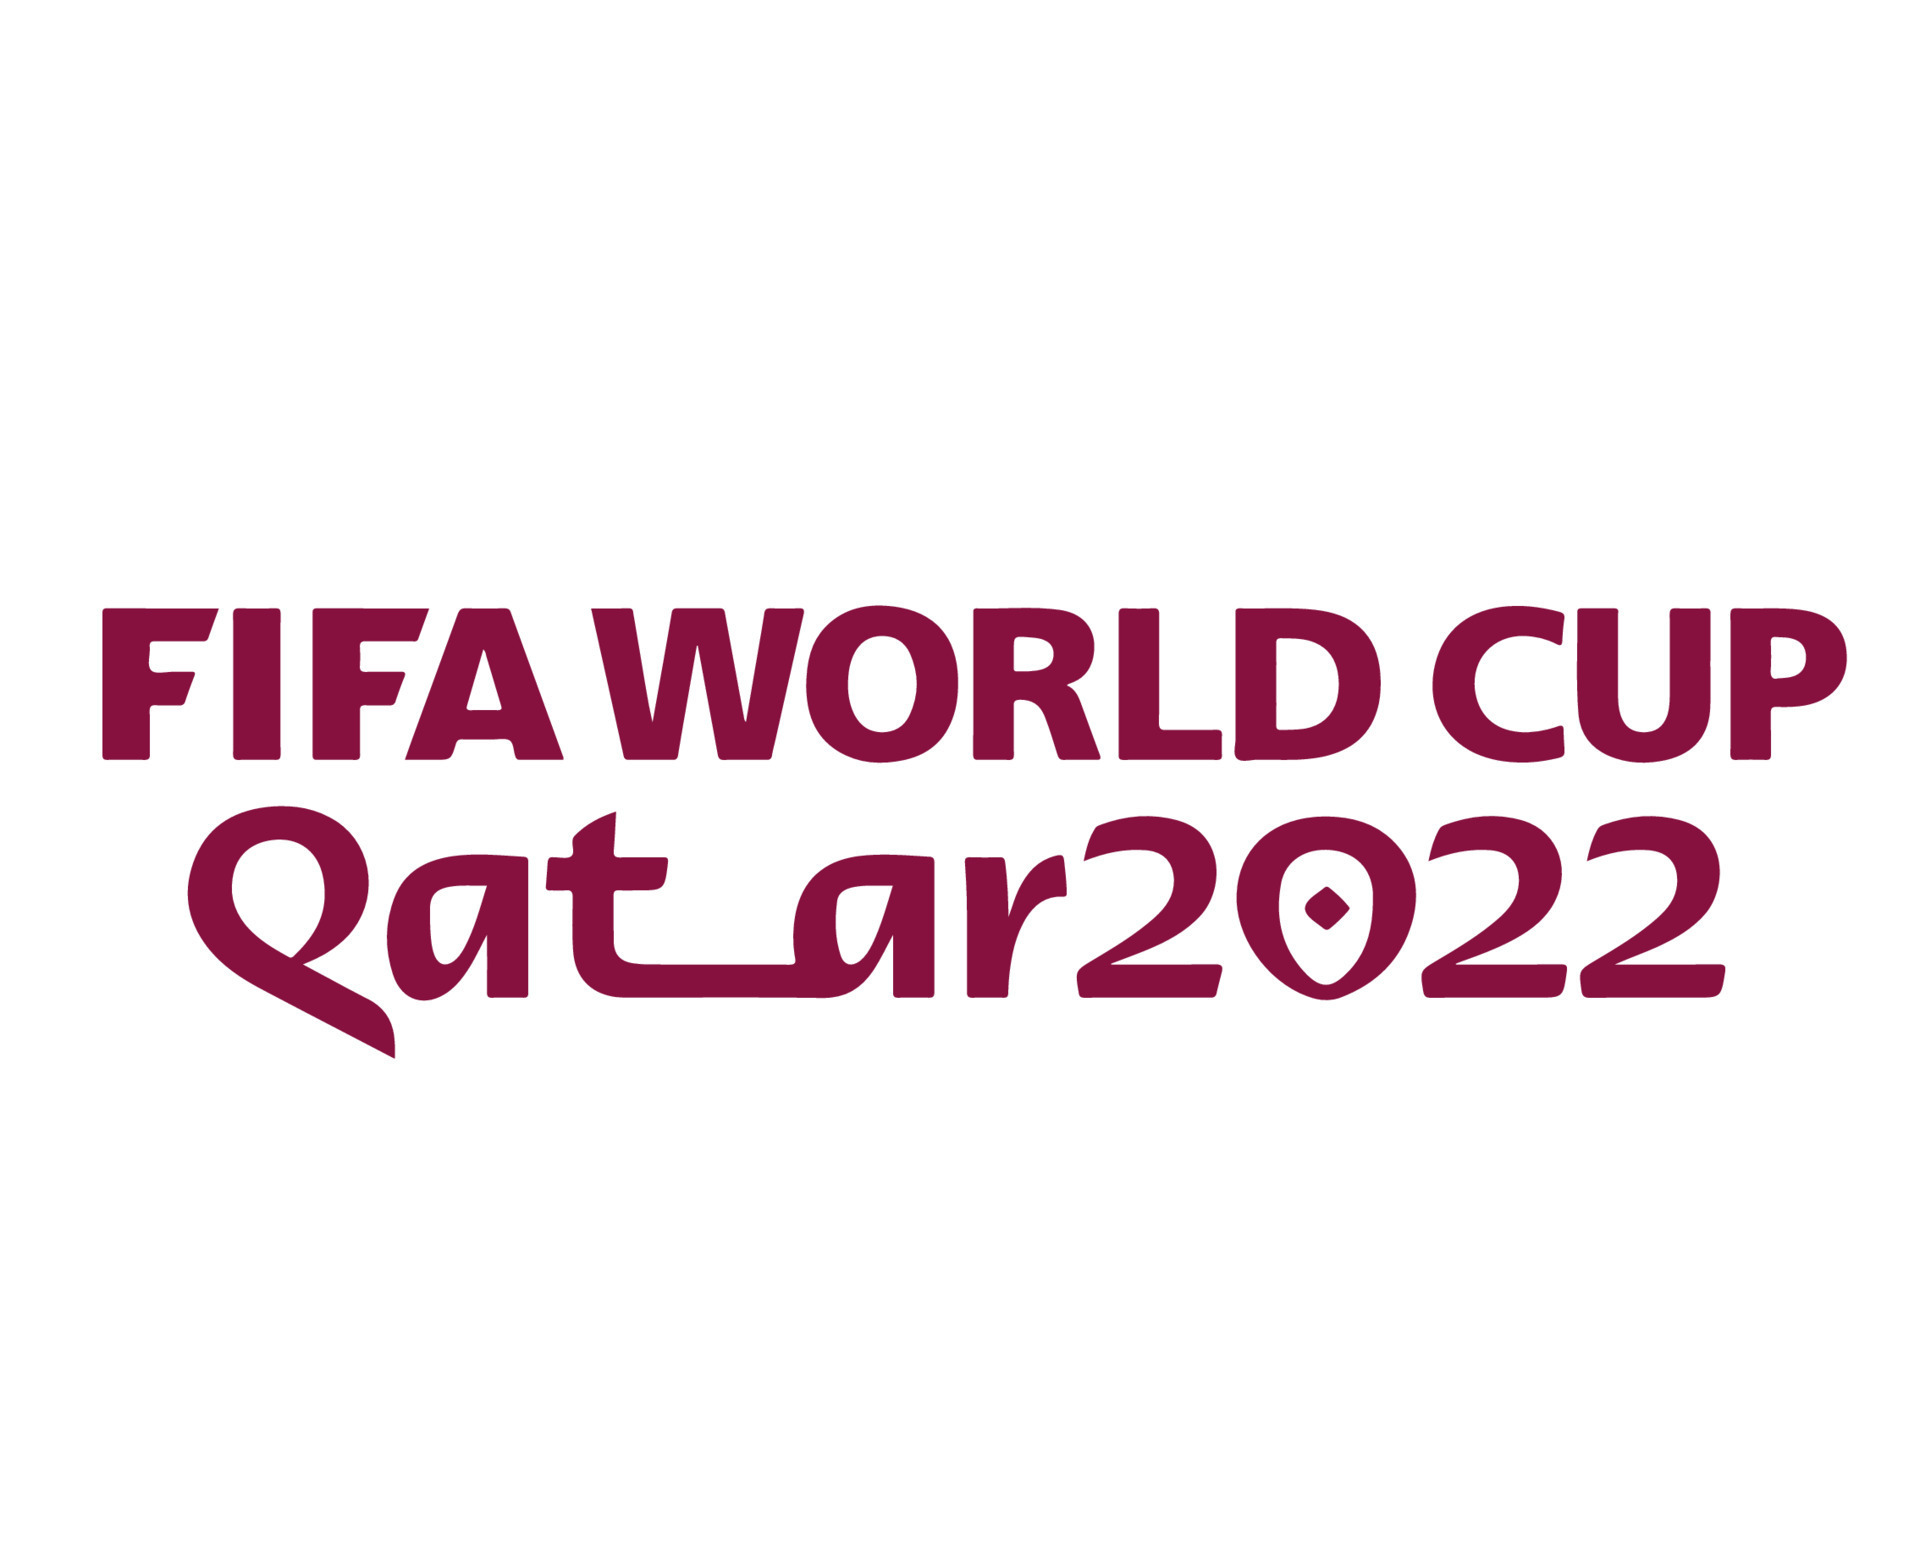 Giải bóng đá thế giới Qatar 2022 sẽ là một trong những sự kiện lớn nhất trong năm đến nay, với sự tham gia của các đội bóng hàng đầu và một cơ hội để chứng kiến những kỹ năng đỉnh cao của các cầu thủ.